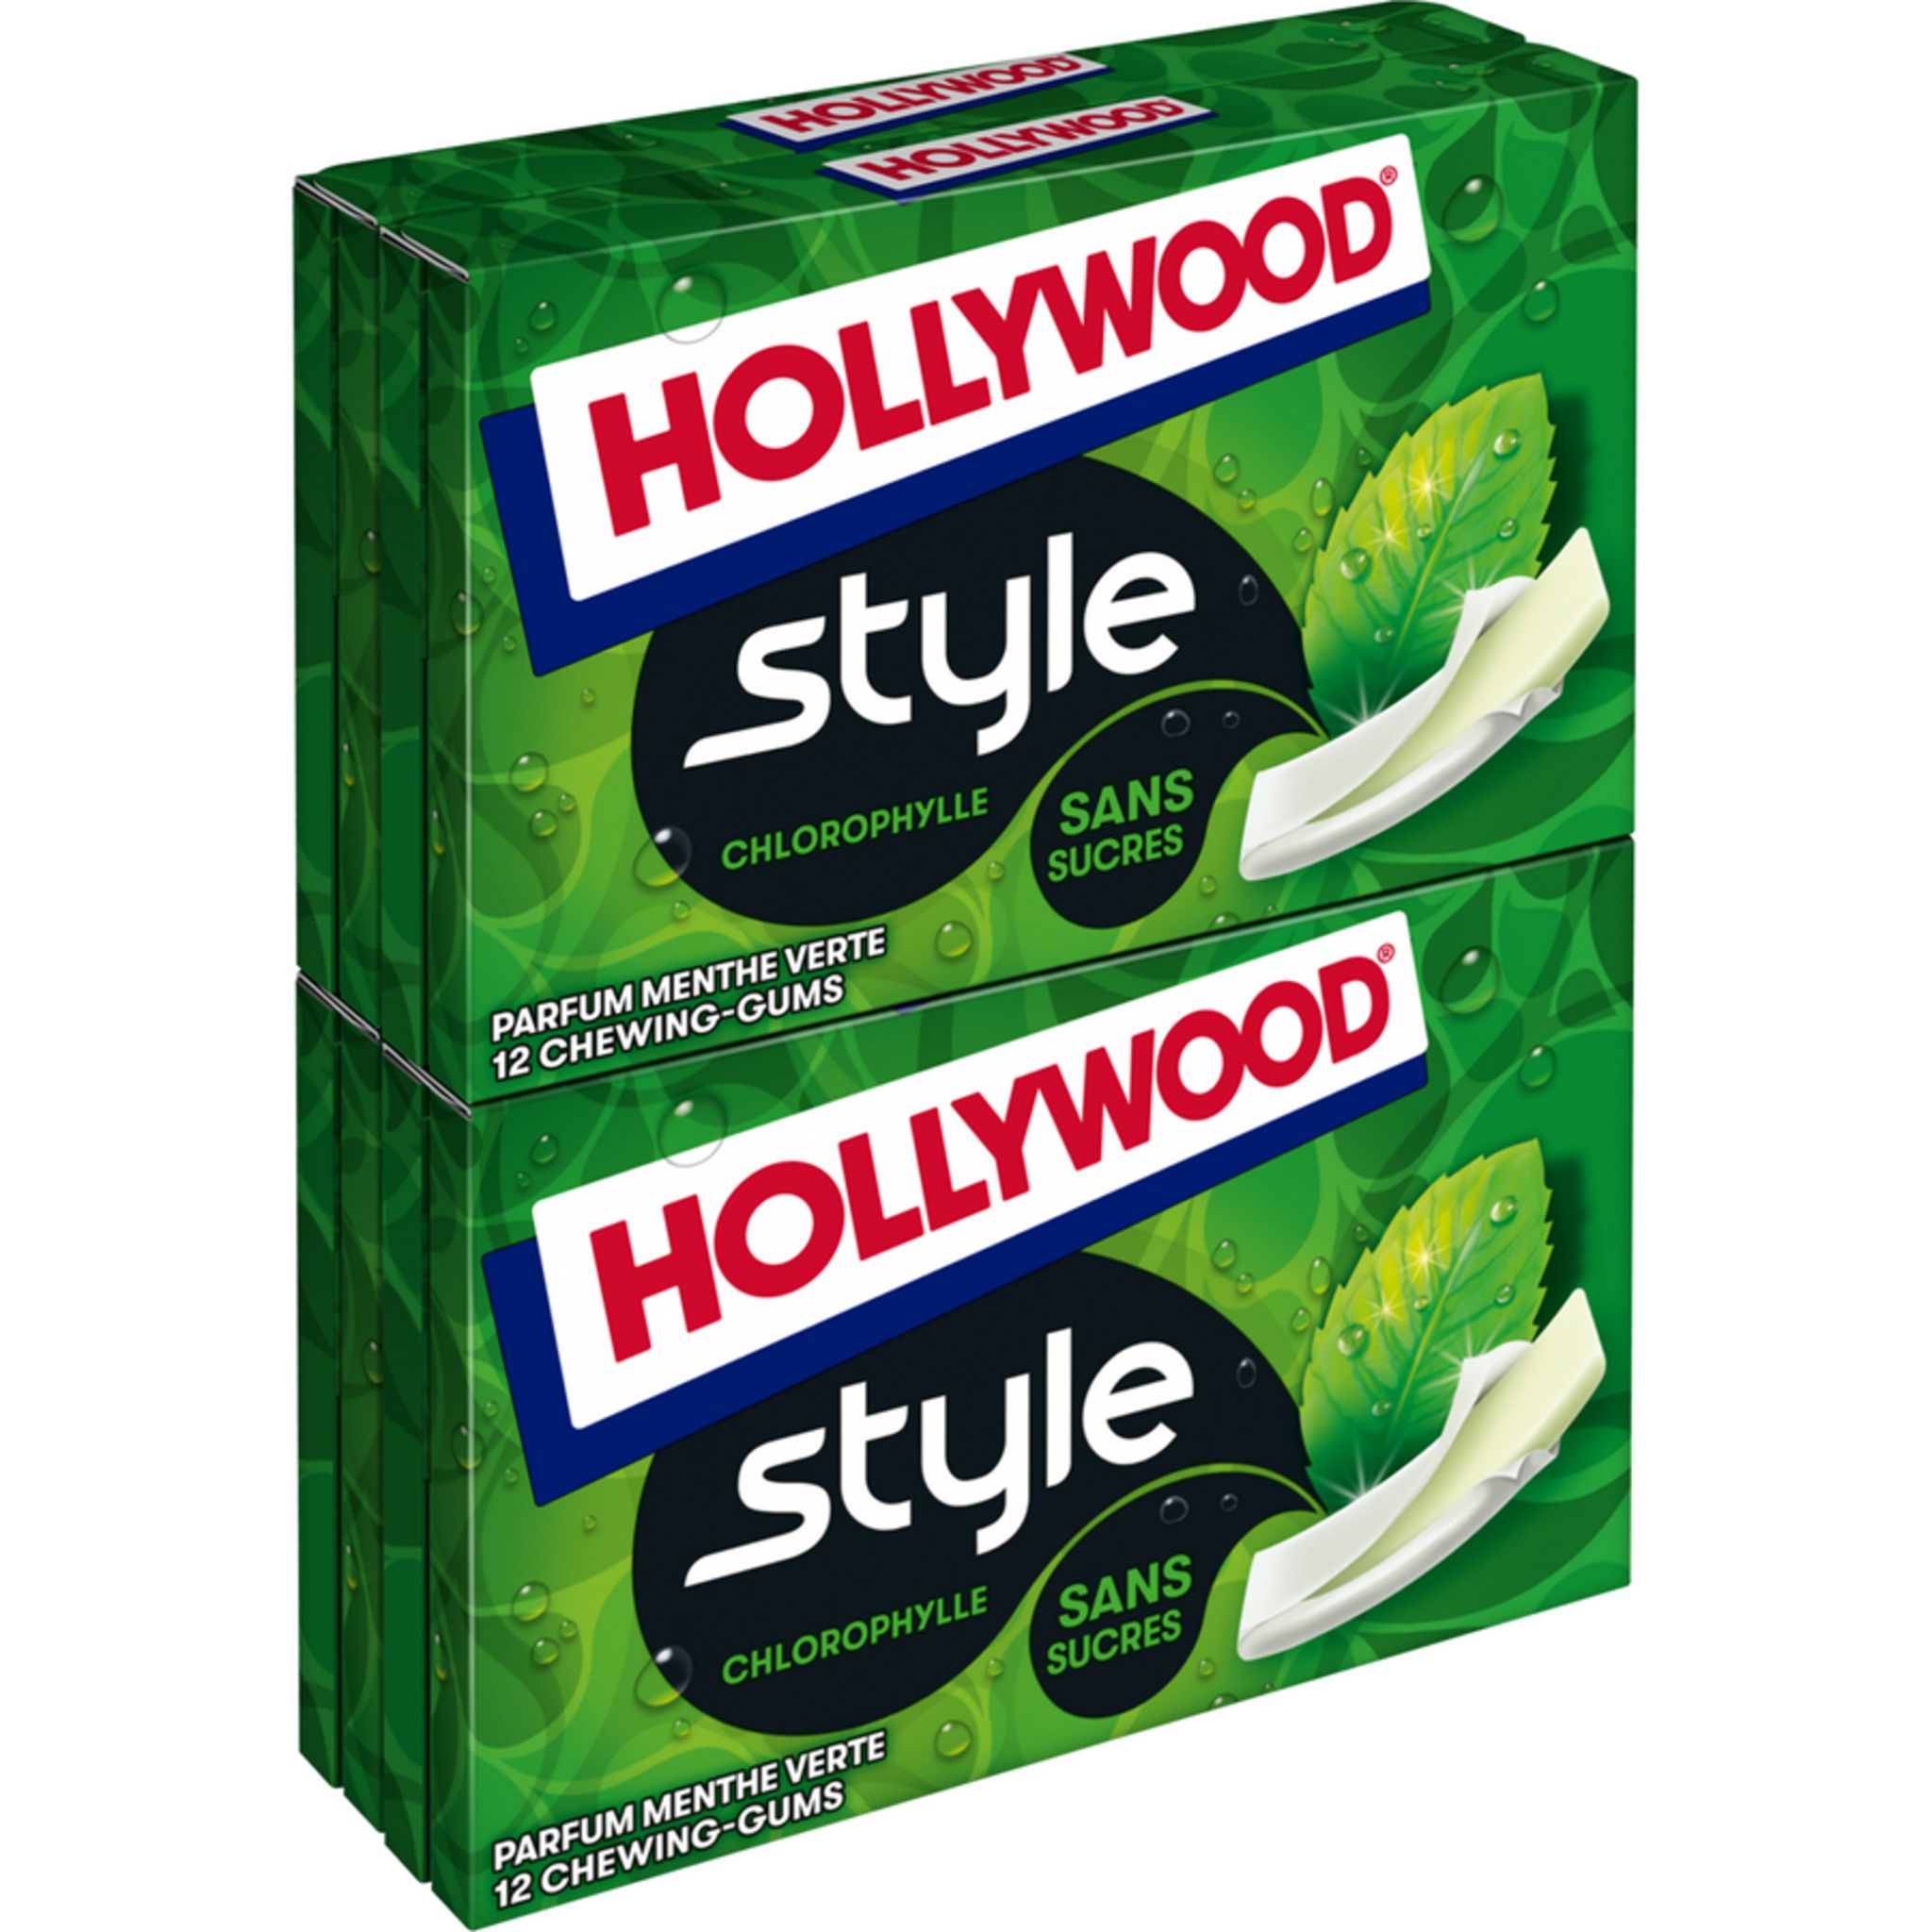 Hollywood Chewing Gum dévoile sa nouvelle copy pub - L'ADN